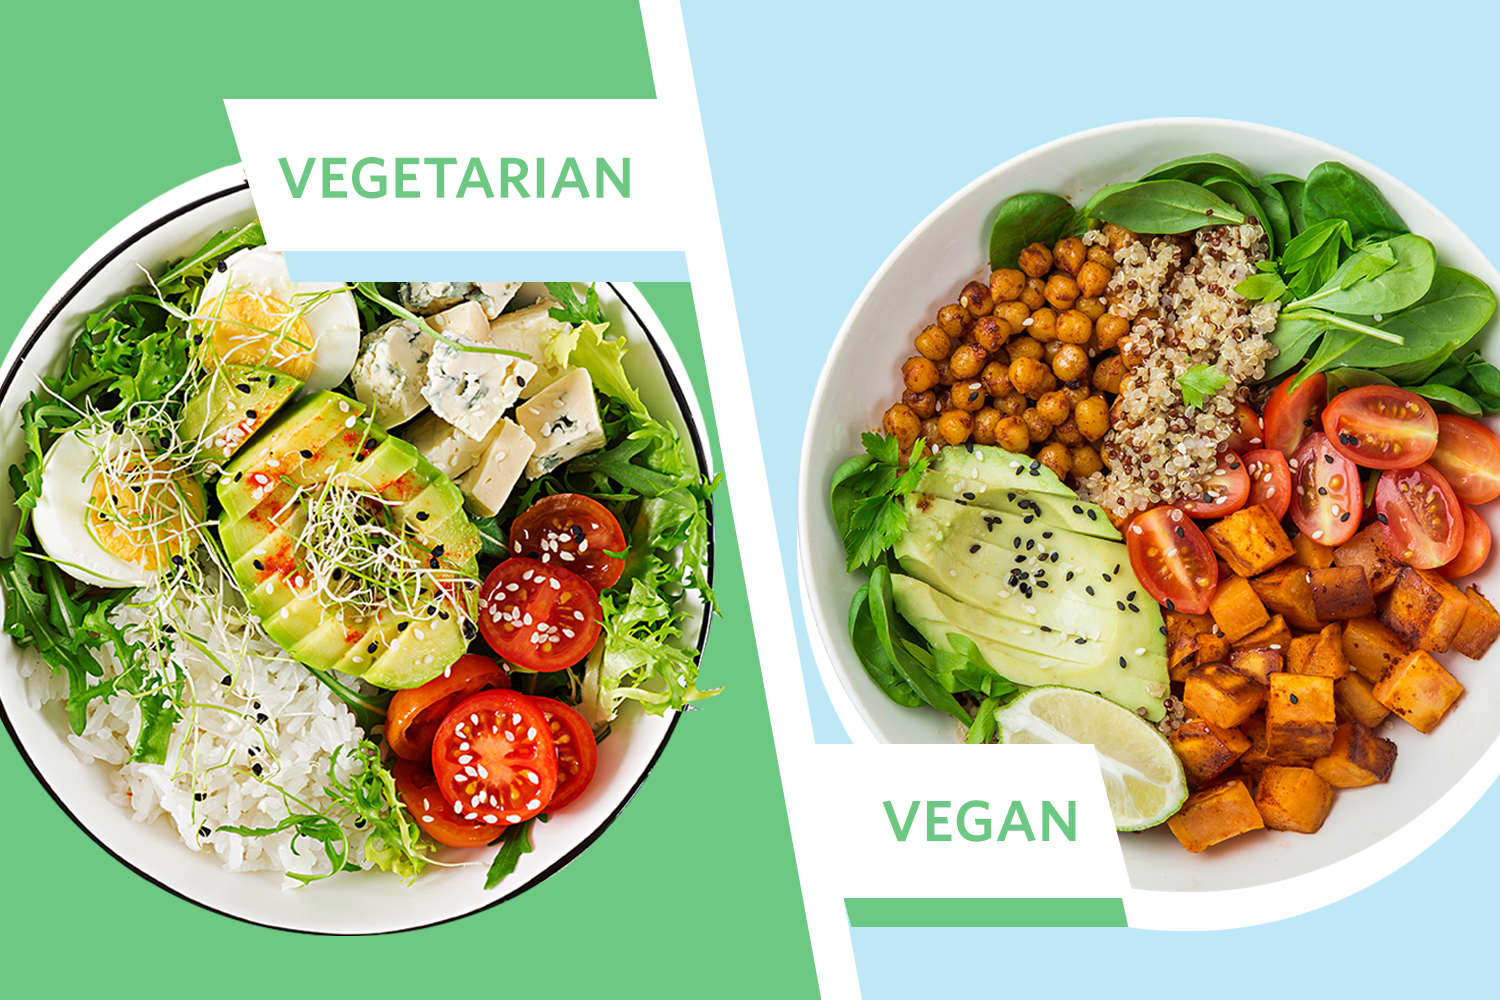 Vegetarian and vegan options